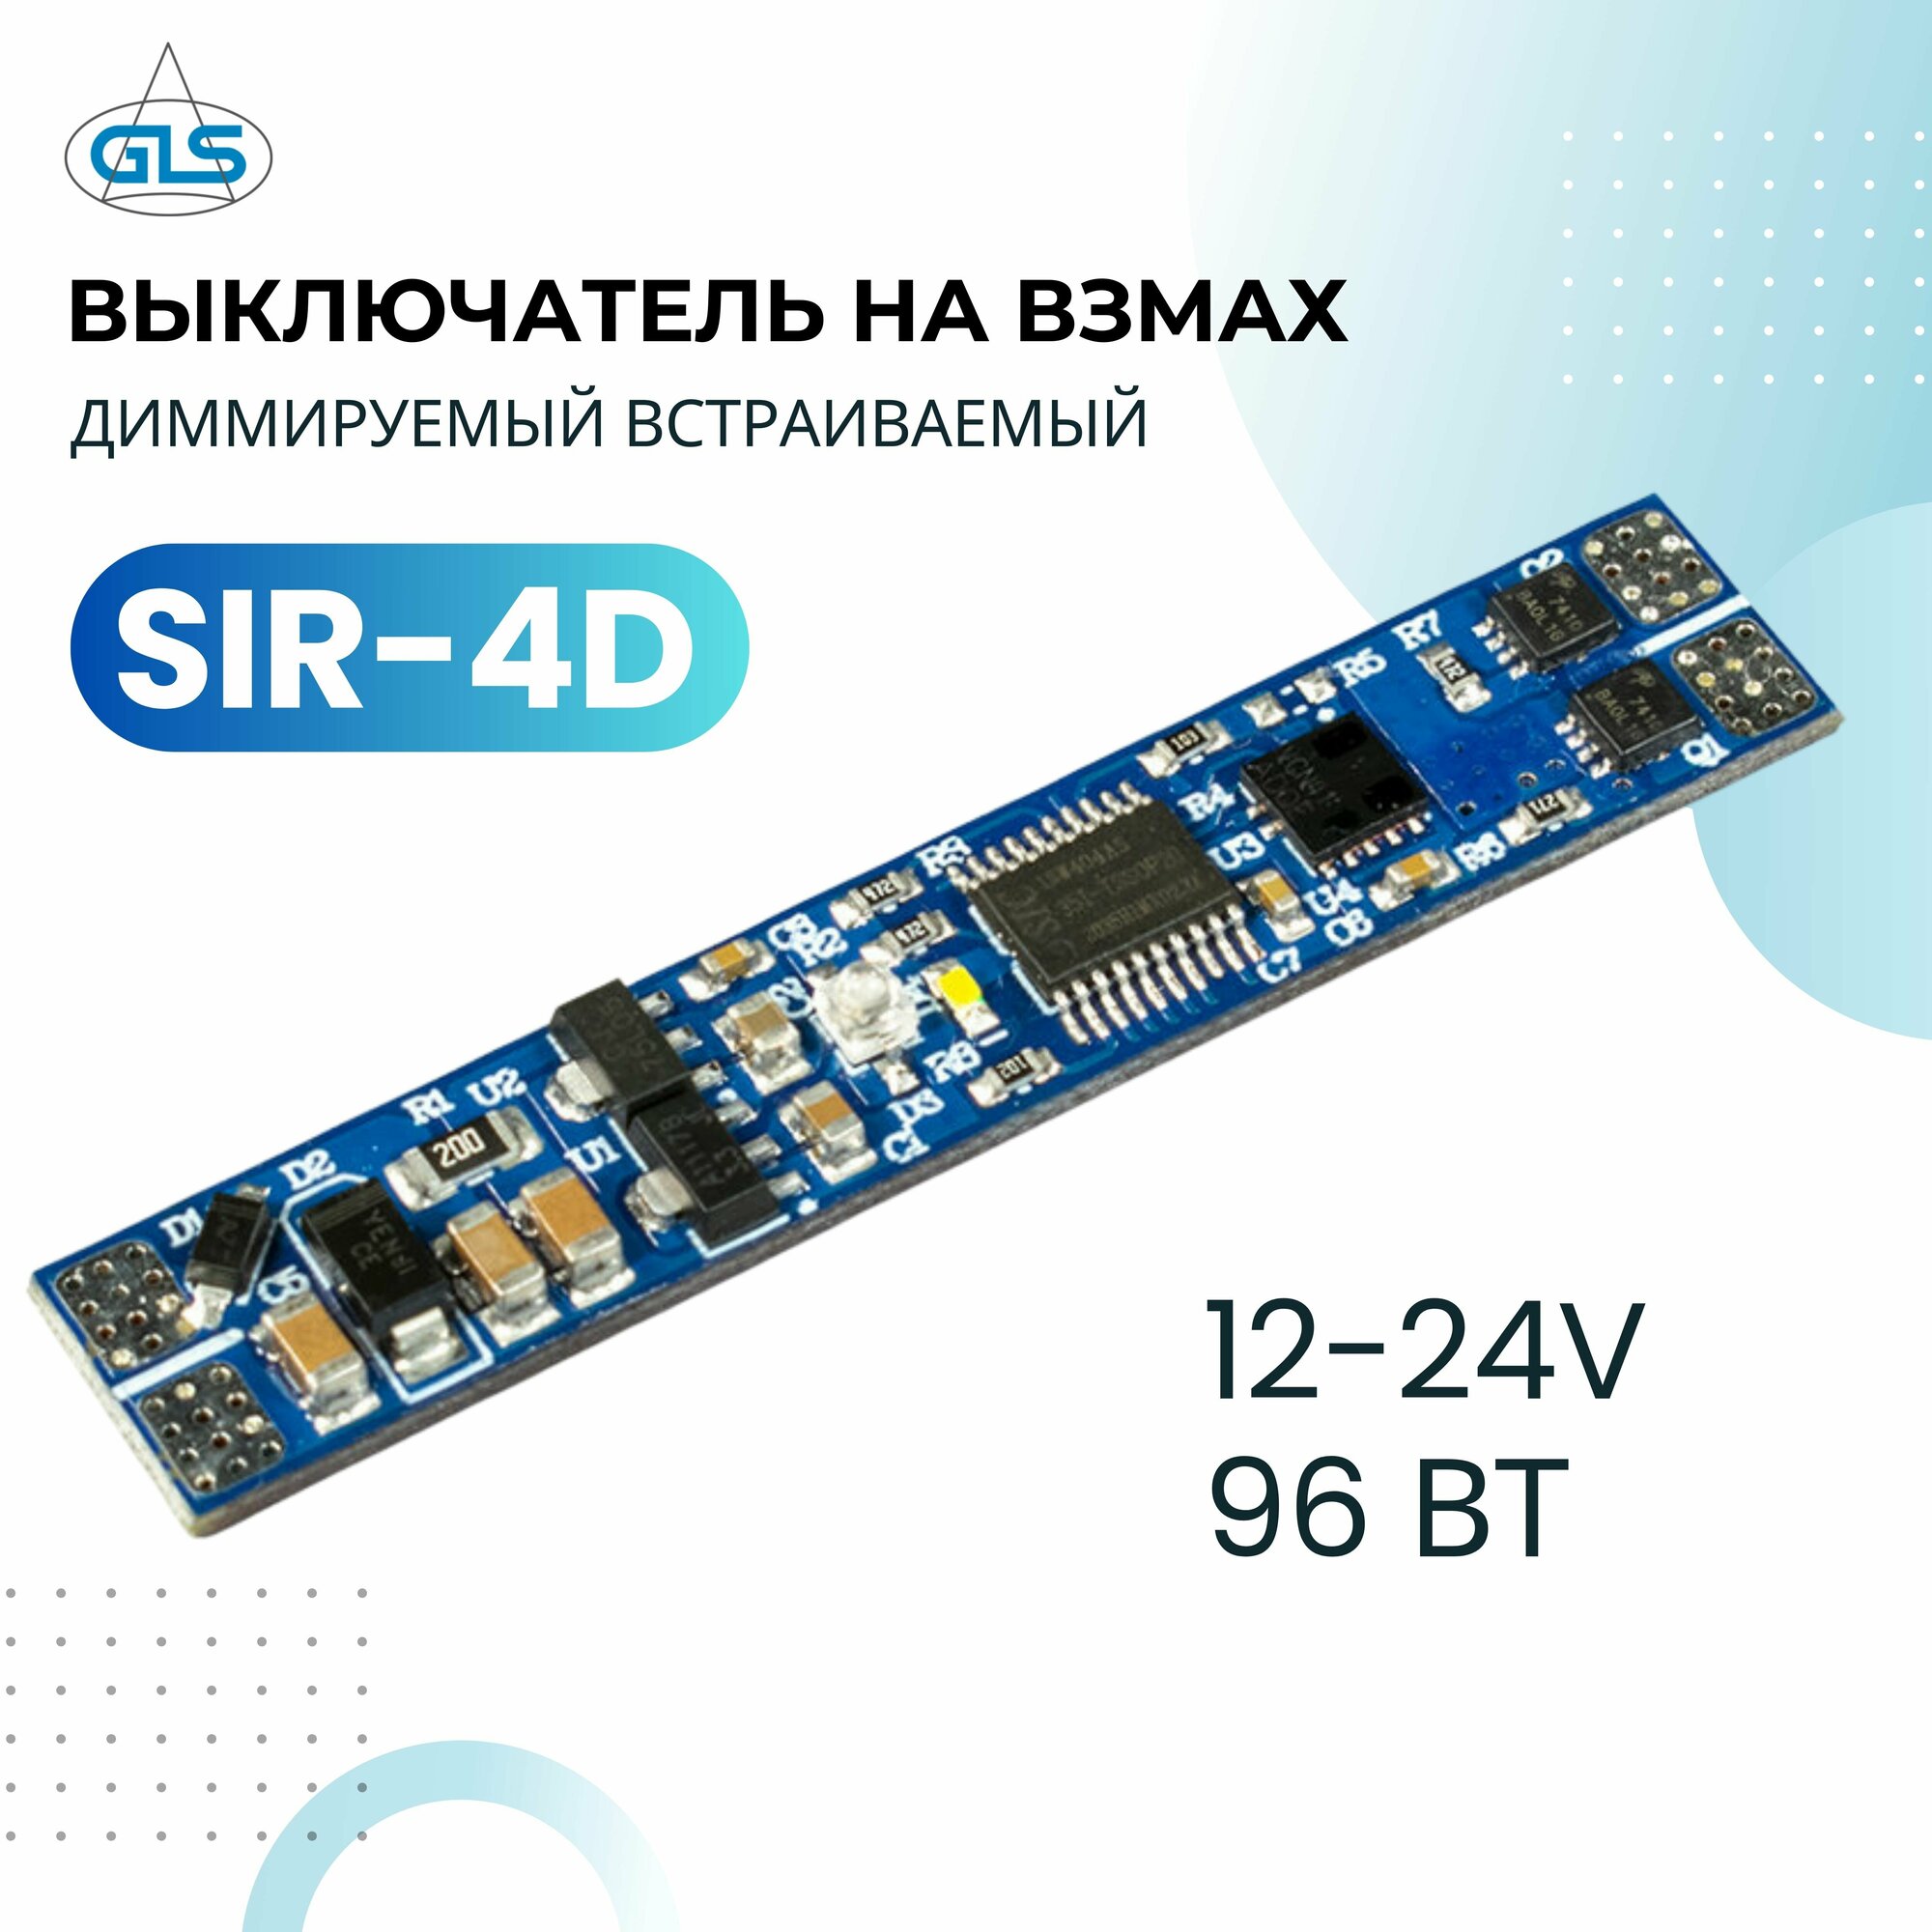 Сенсорный выключатель SIR-4D на взмах диммируемый встраиваемый GLS 12-24V